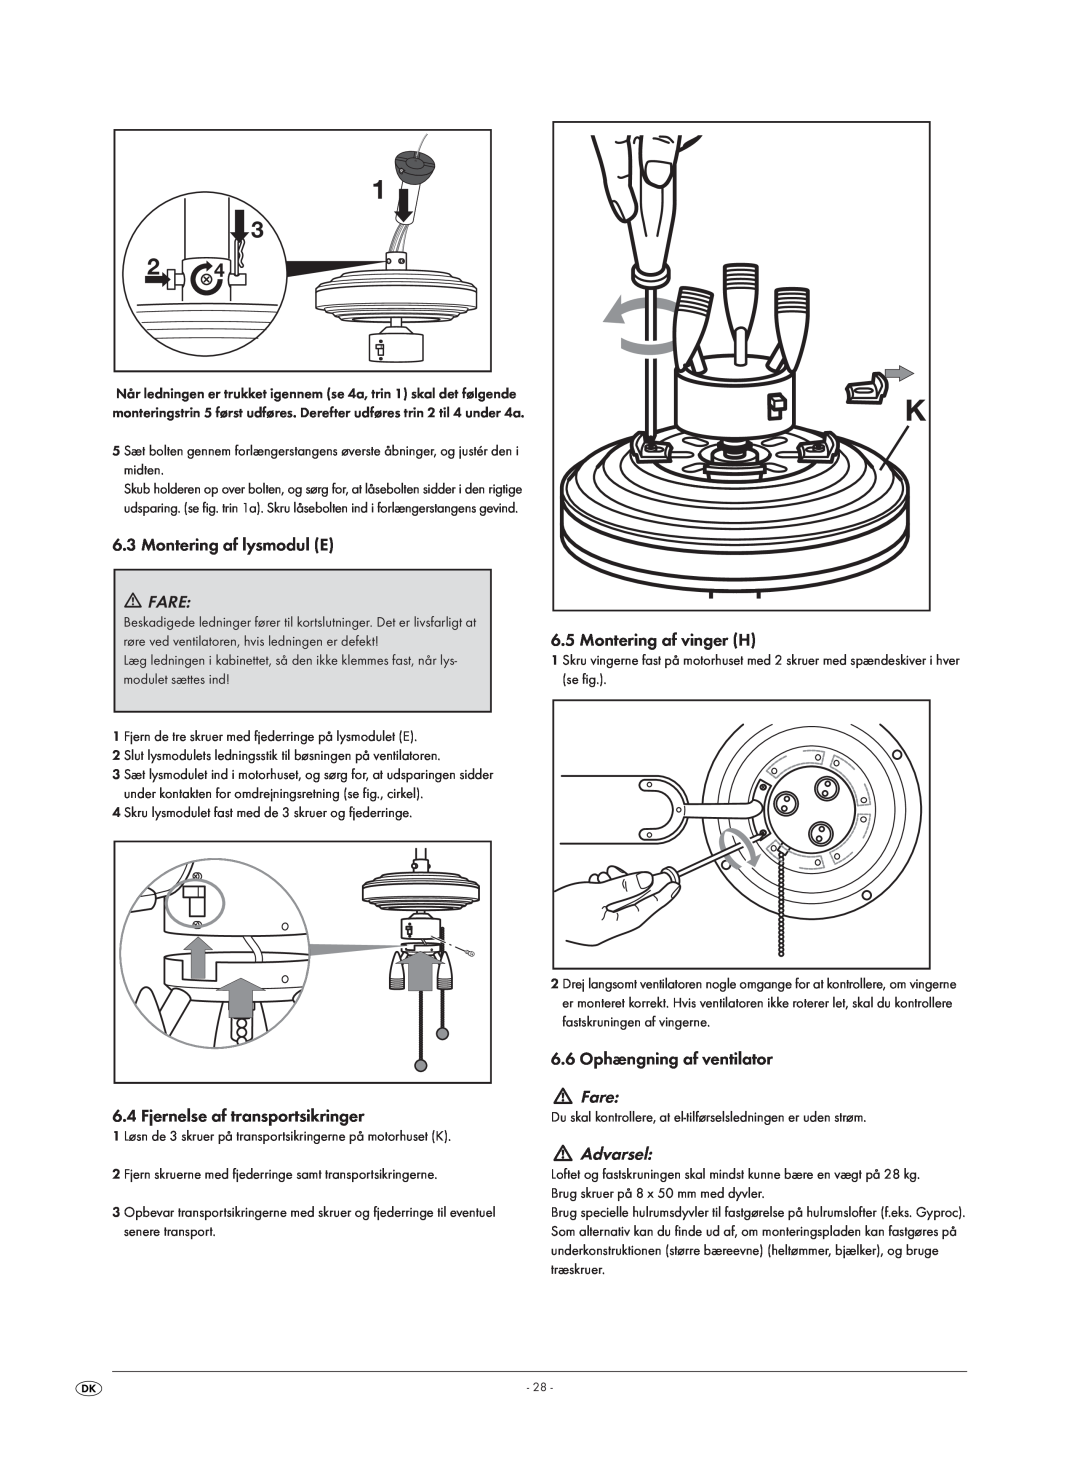 Kompernass KH 1150 manual Montering af lysmodul E, Fare, Fjernelse af transportsikringer, Montering af vinger H, Advarsel 